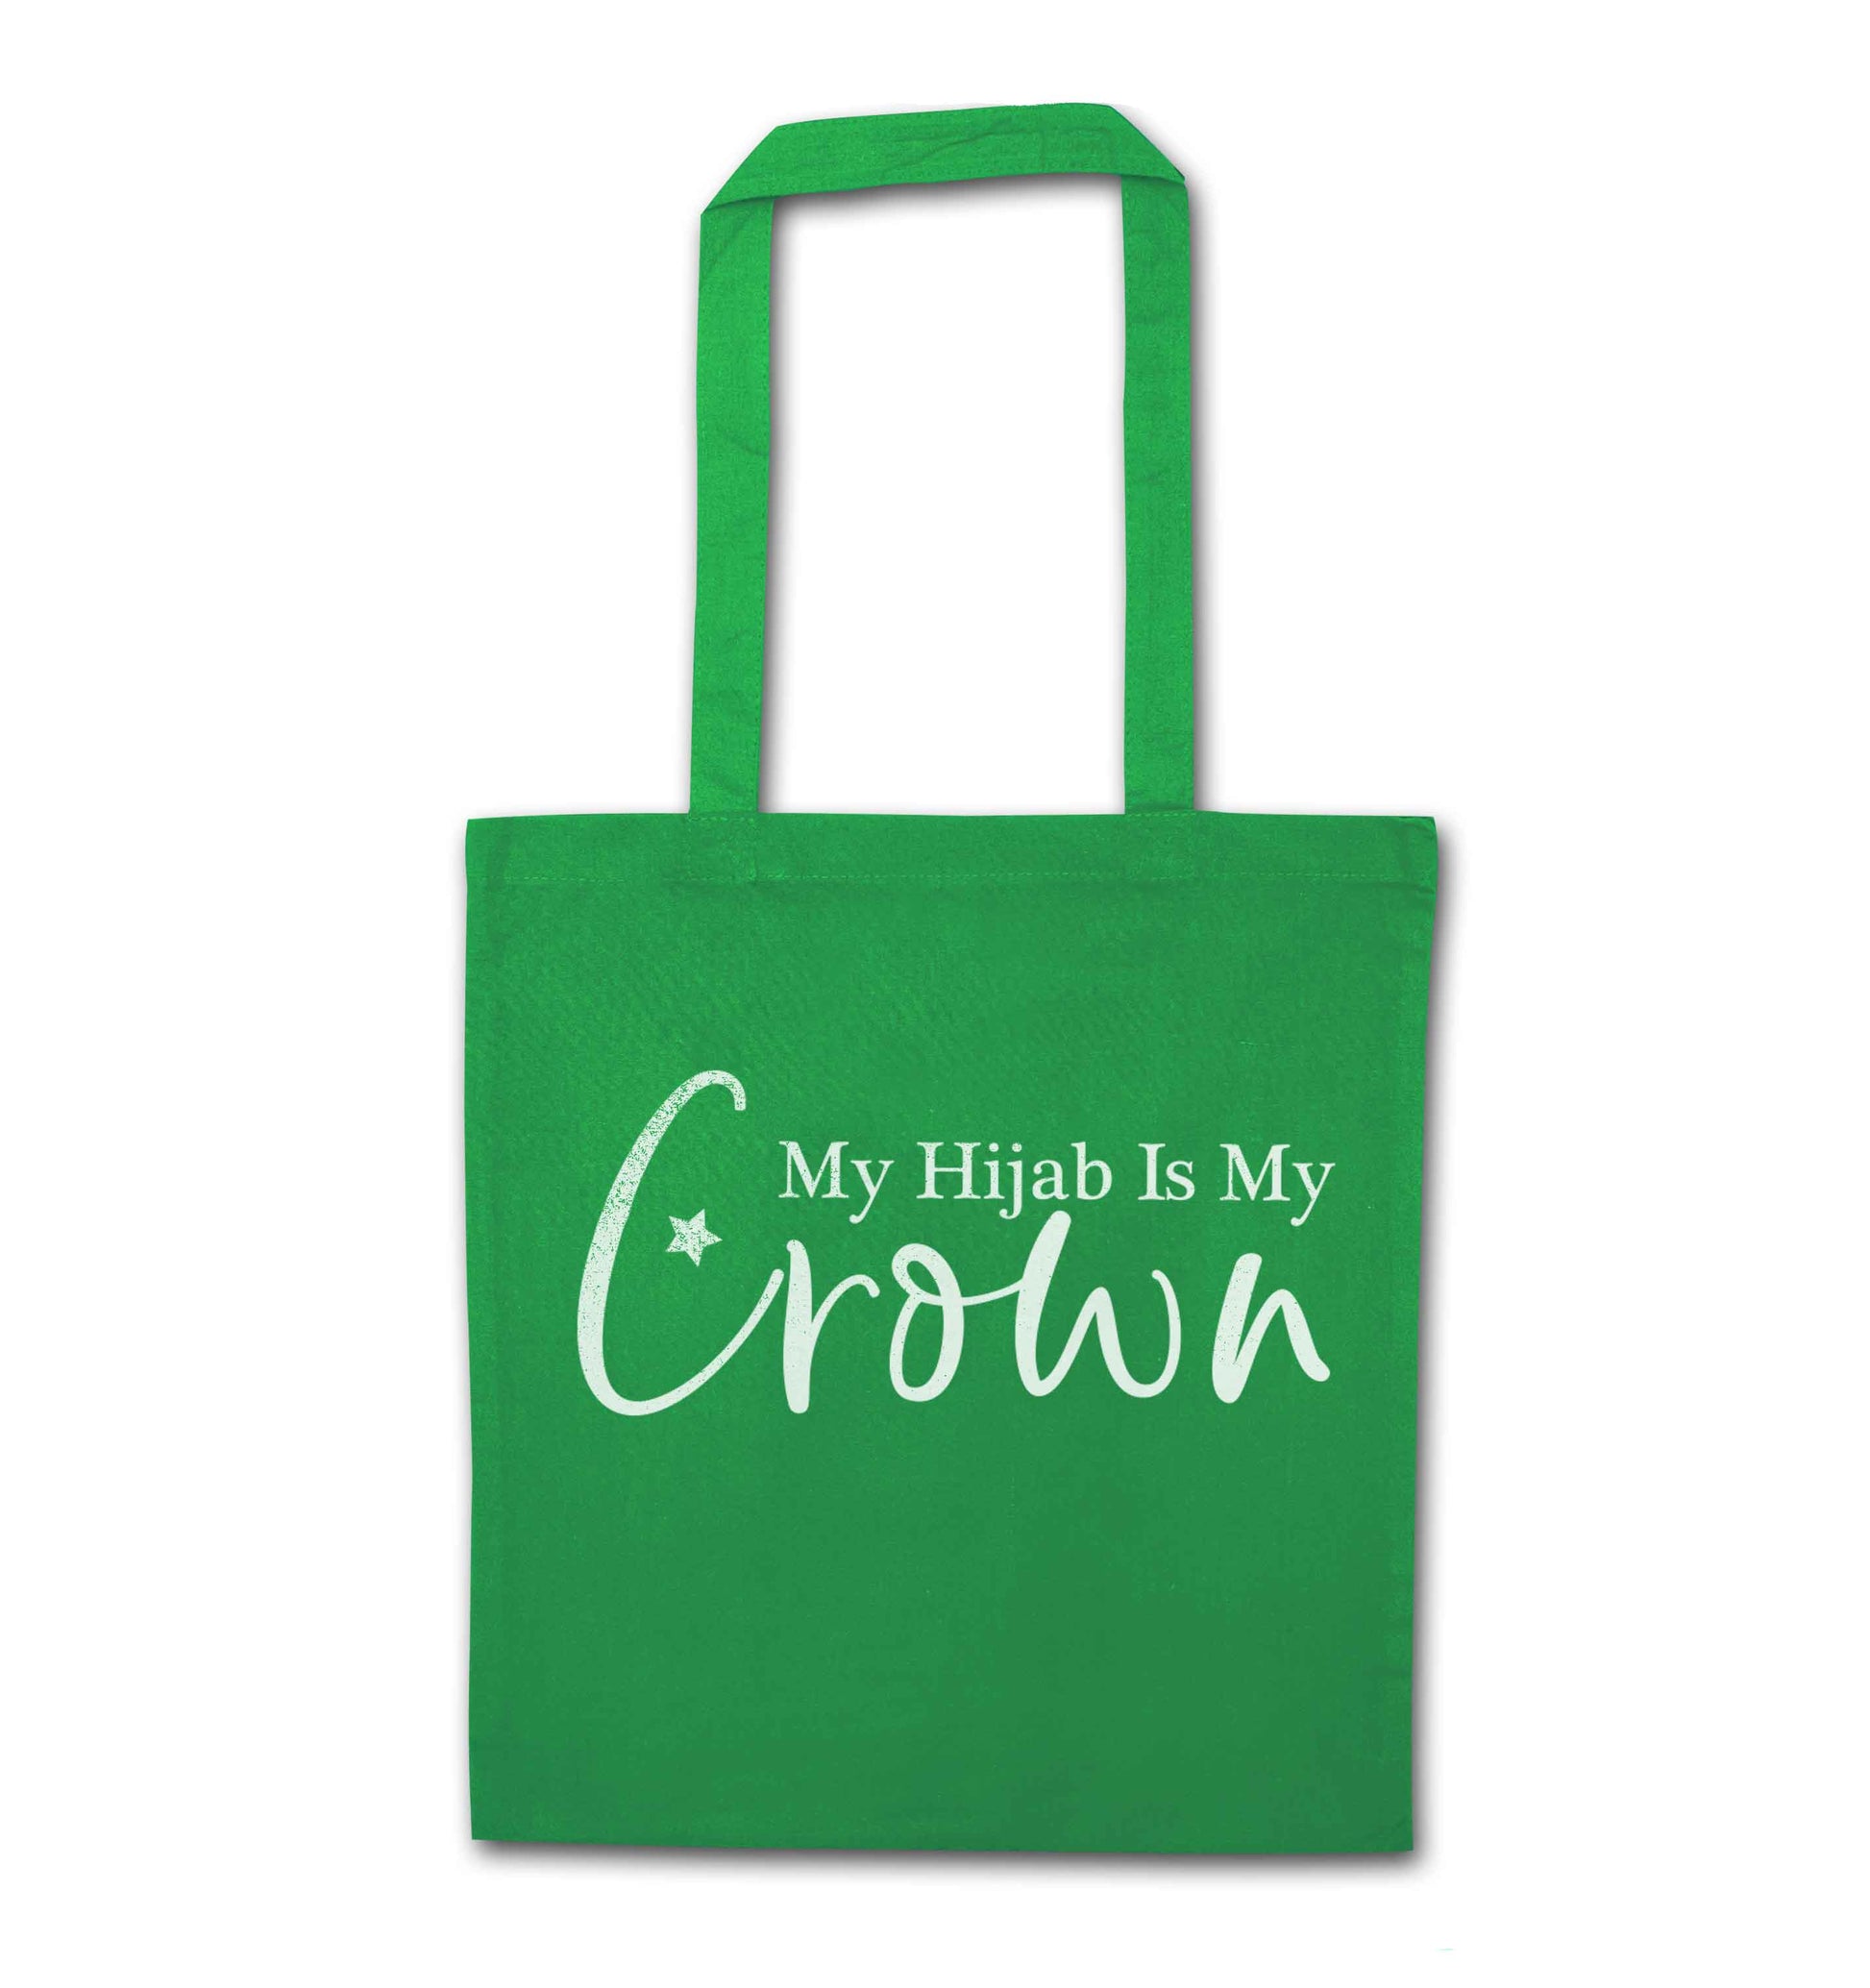 My hijab is my crown green tote bag